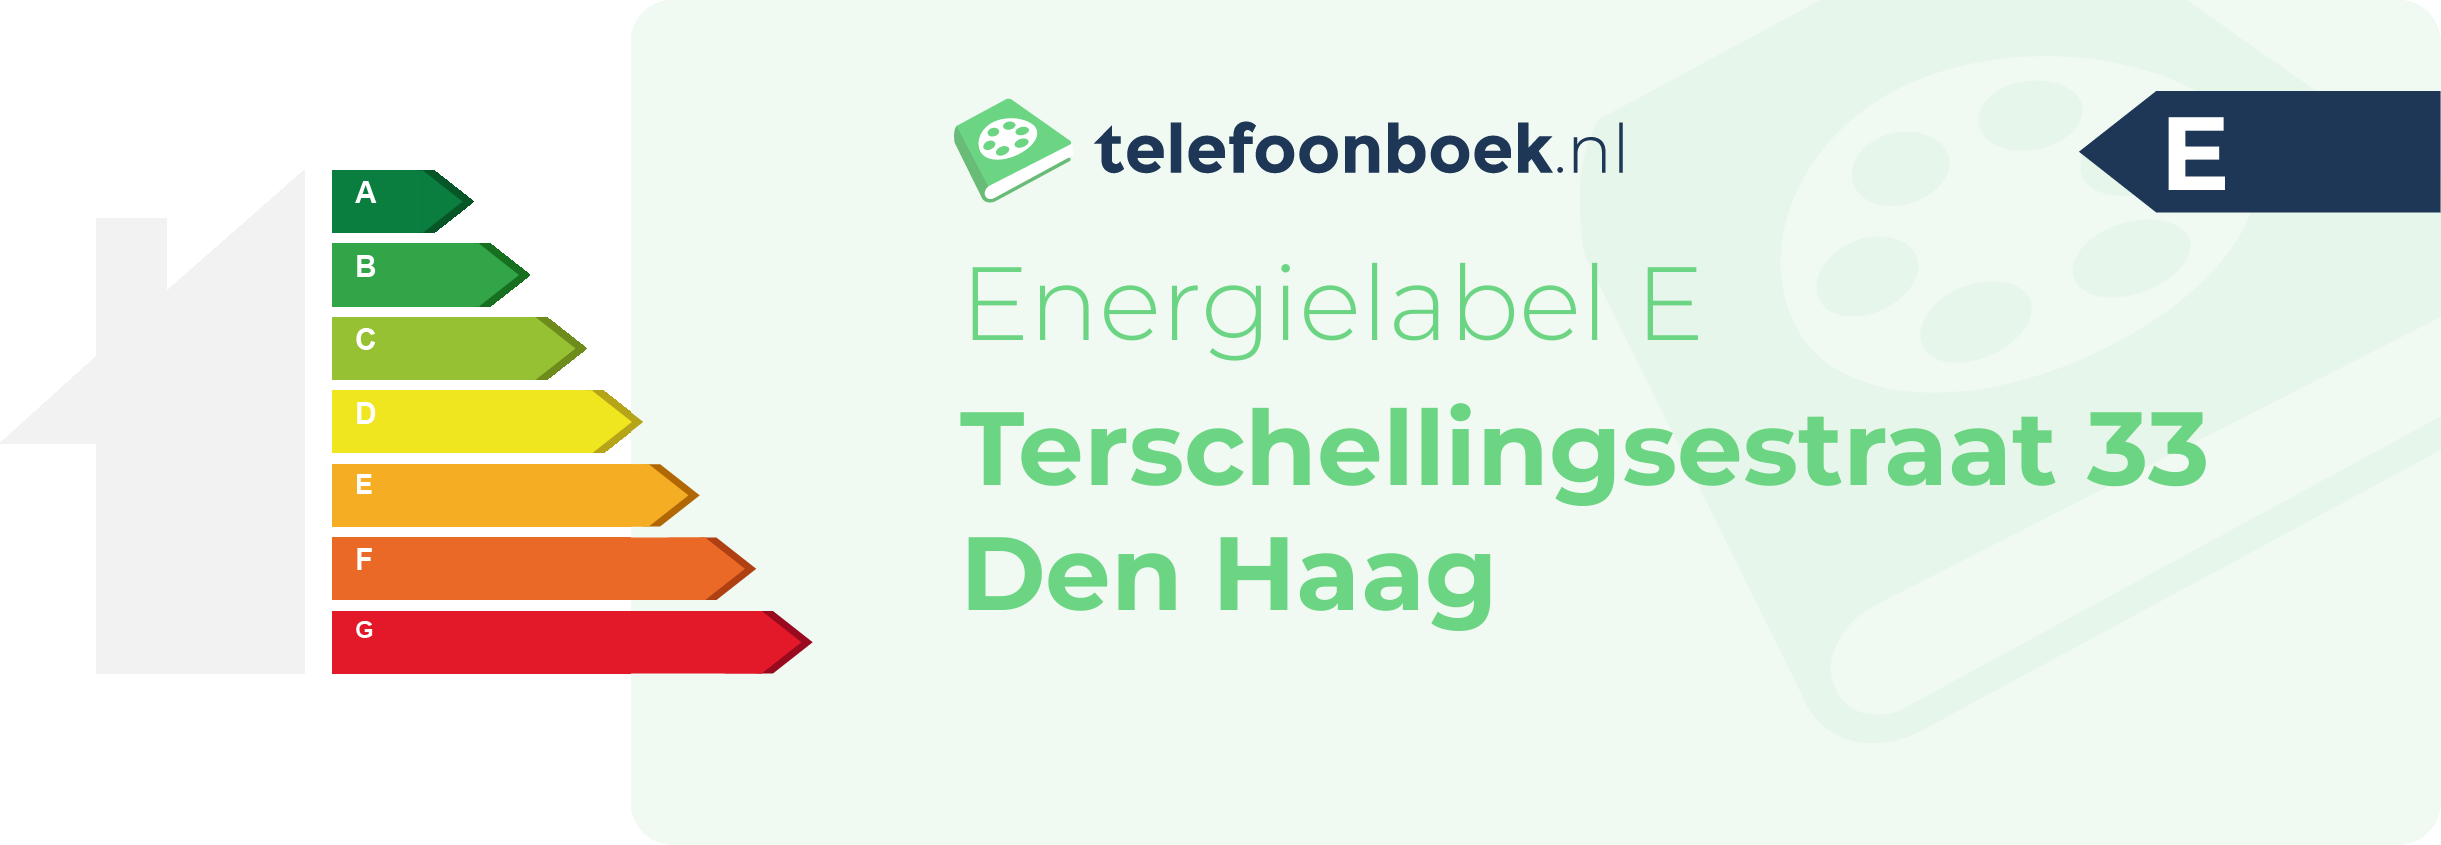 Energielabel Terschellingsestraat 33 Den Haag